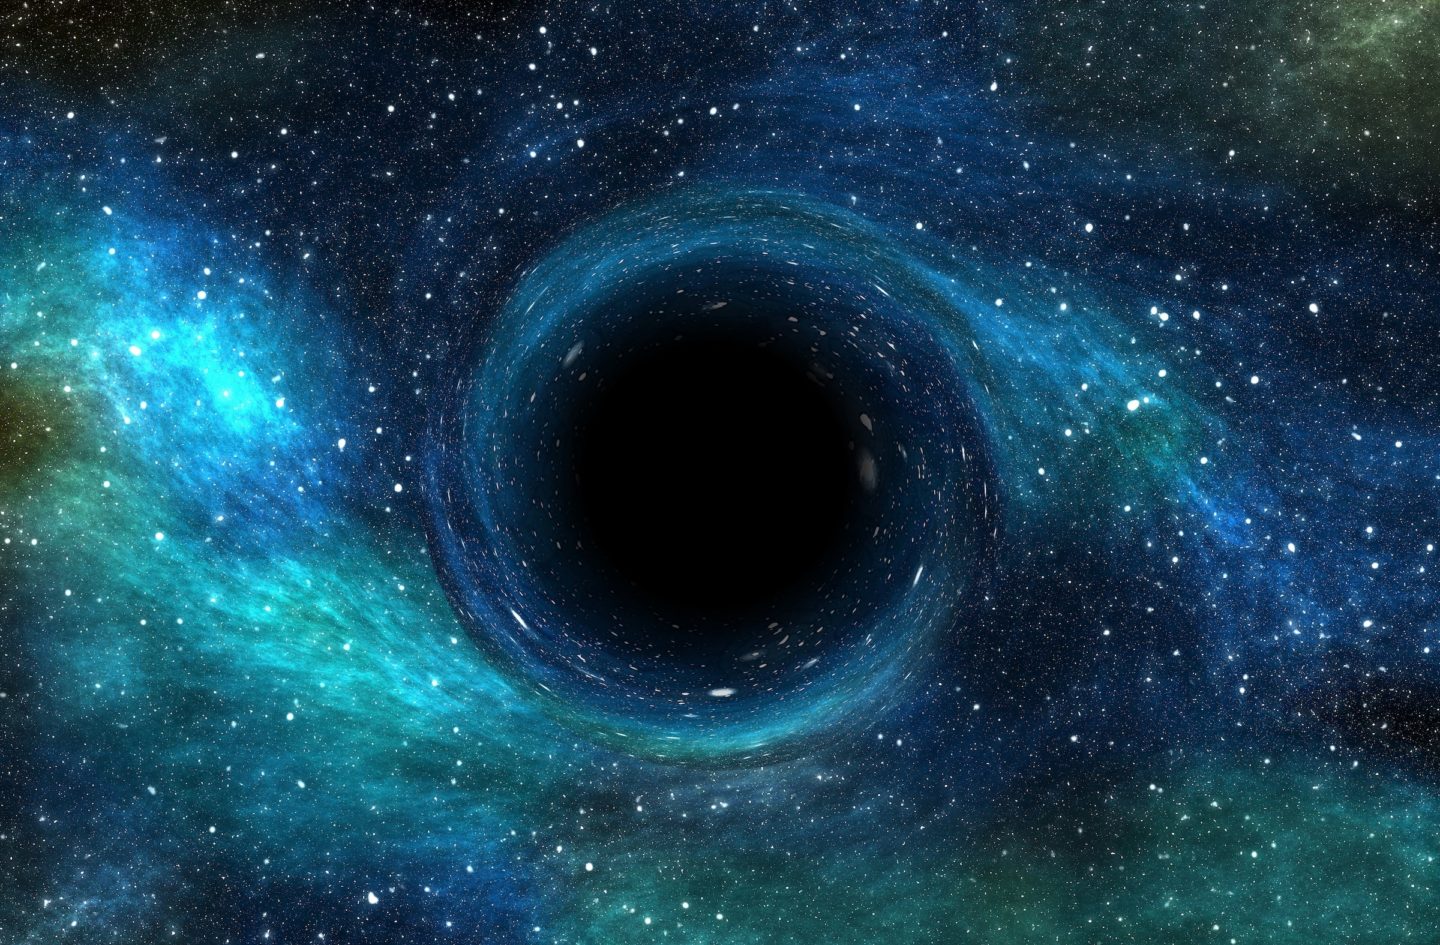 المادة المظلمة المسبب الأساسي لوجود ثقوب سوداء في بداية الكون